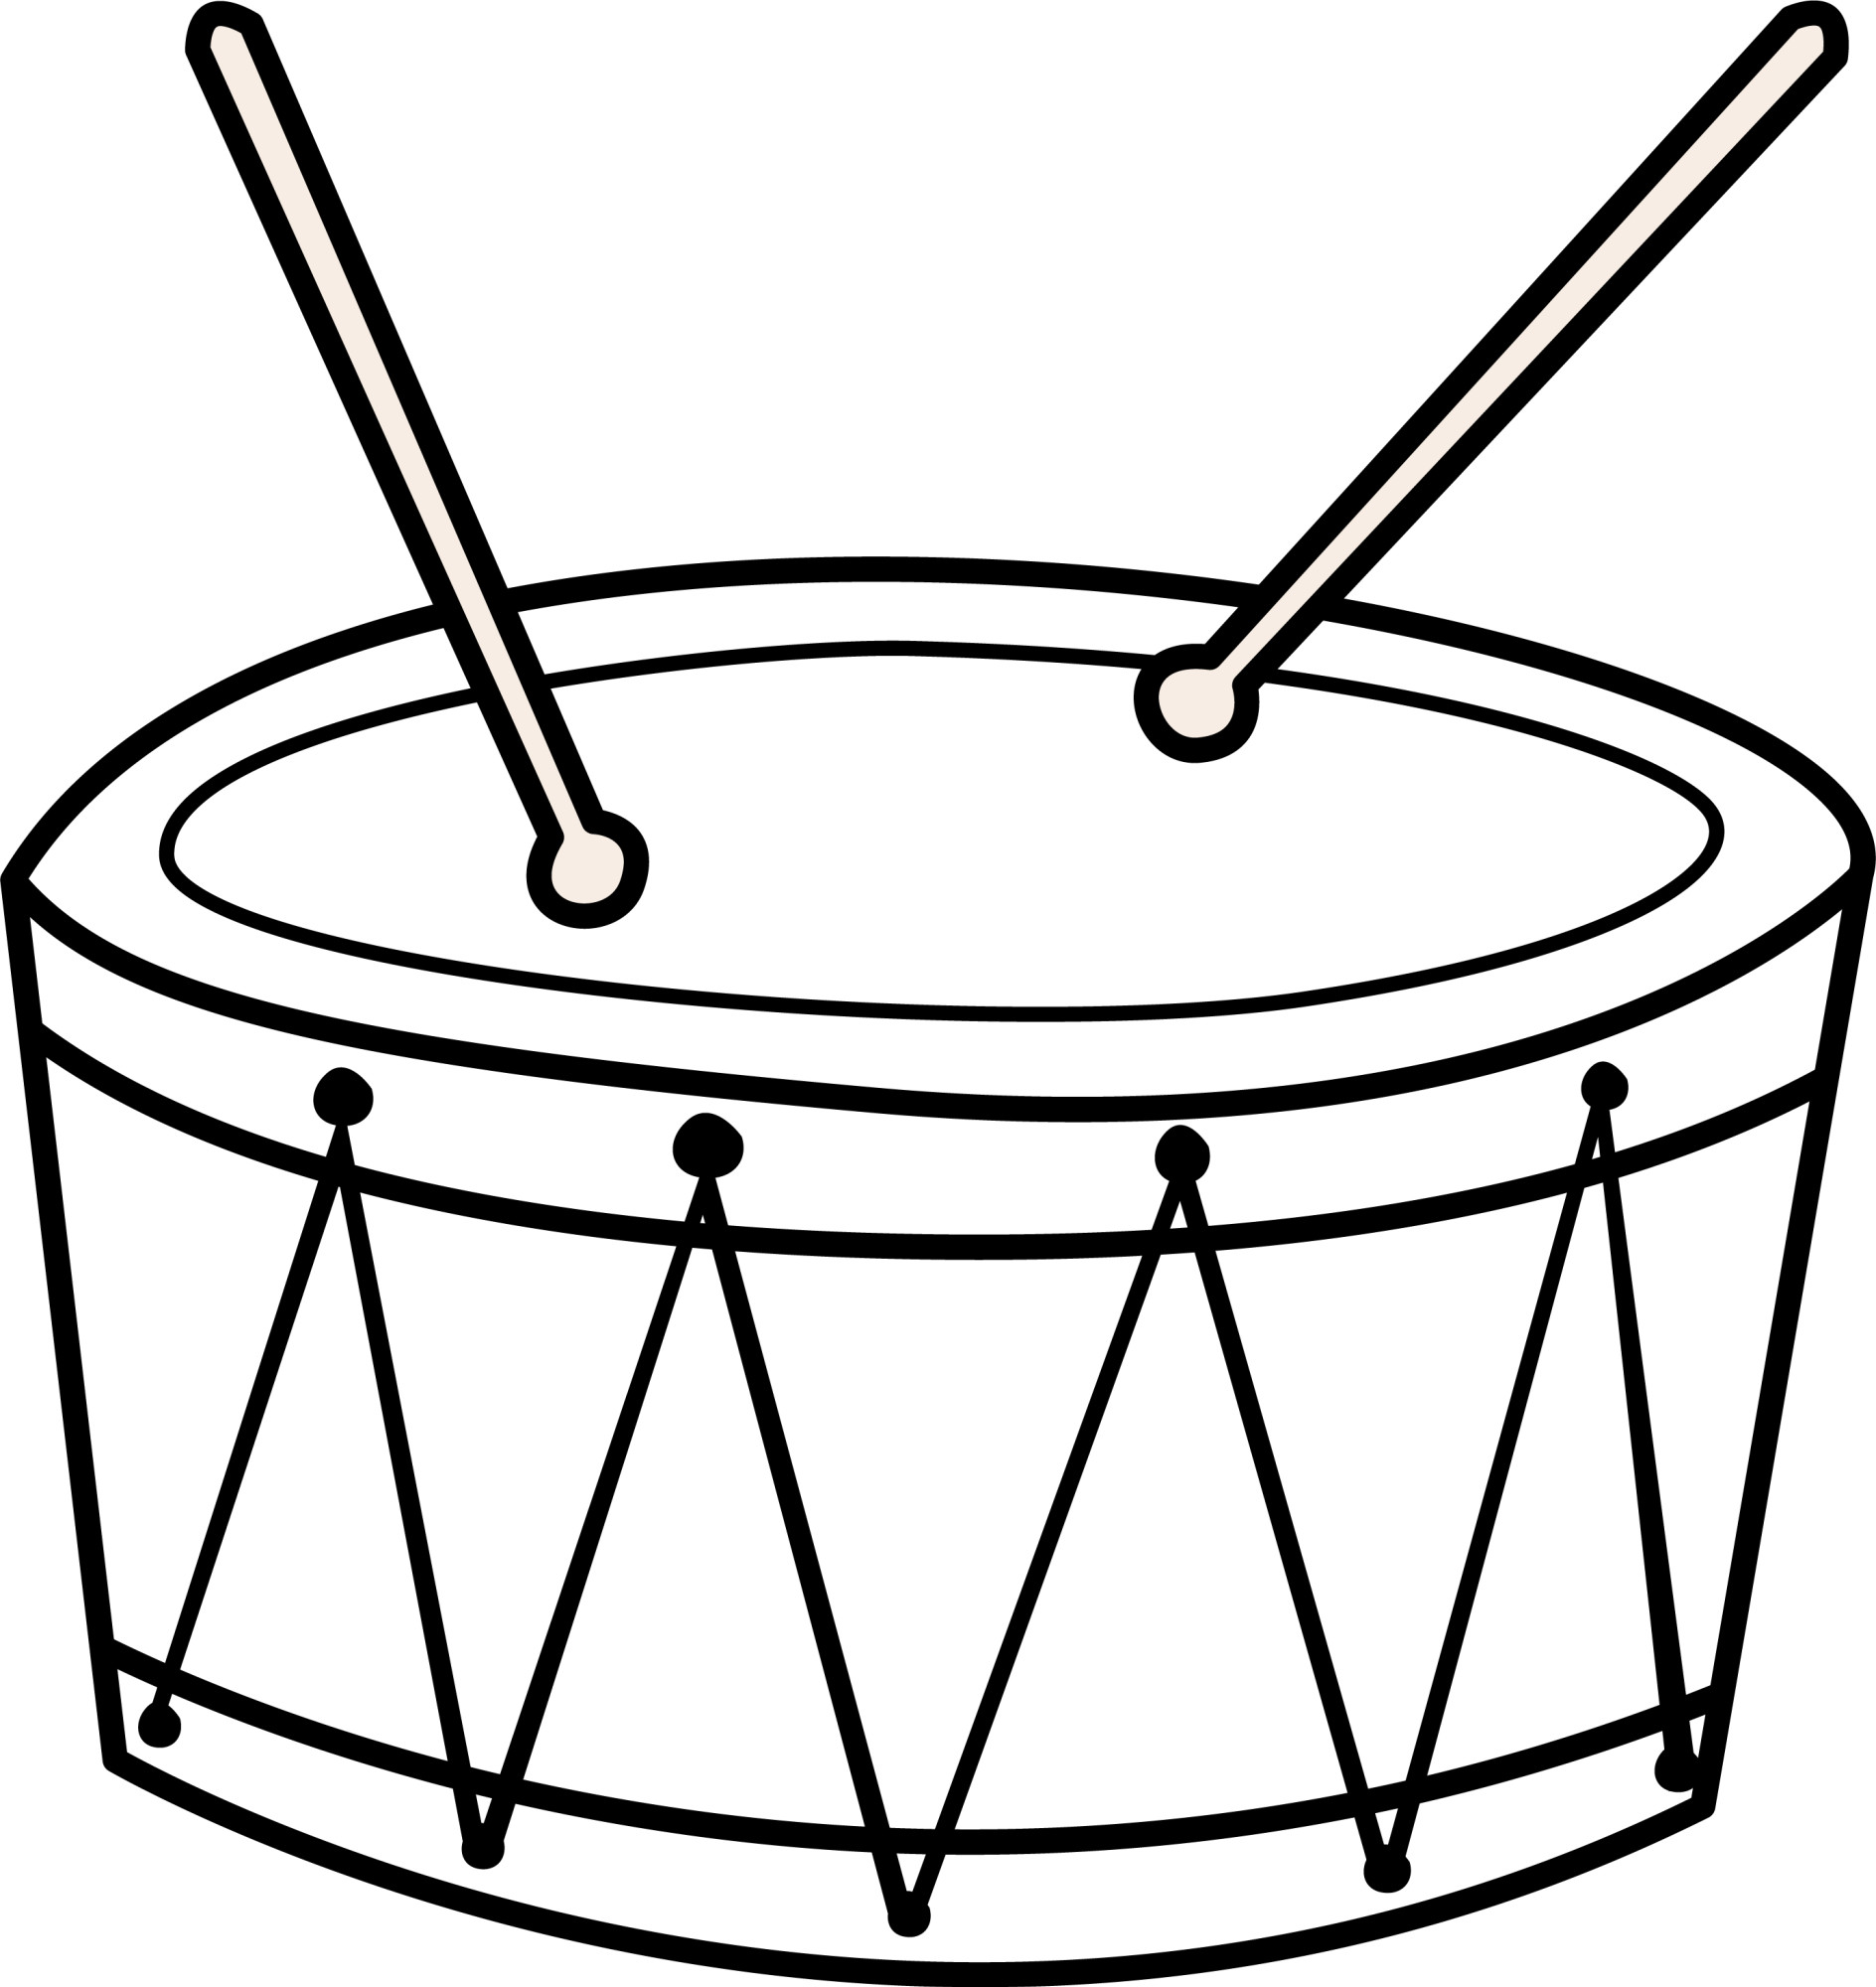 Раскраска для детей: музыкальная детская игрушка барабан